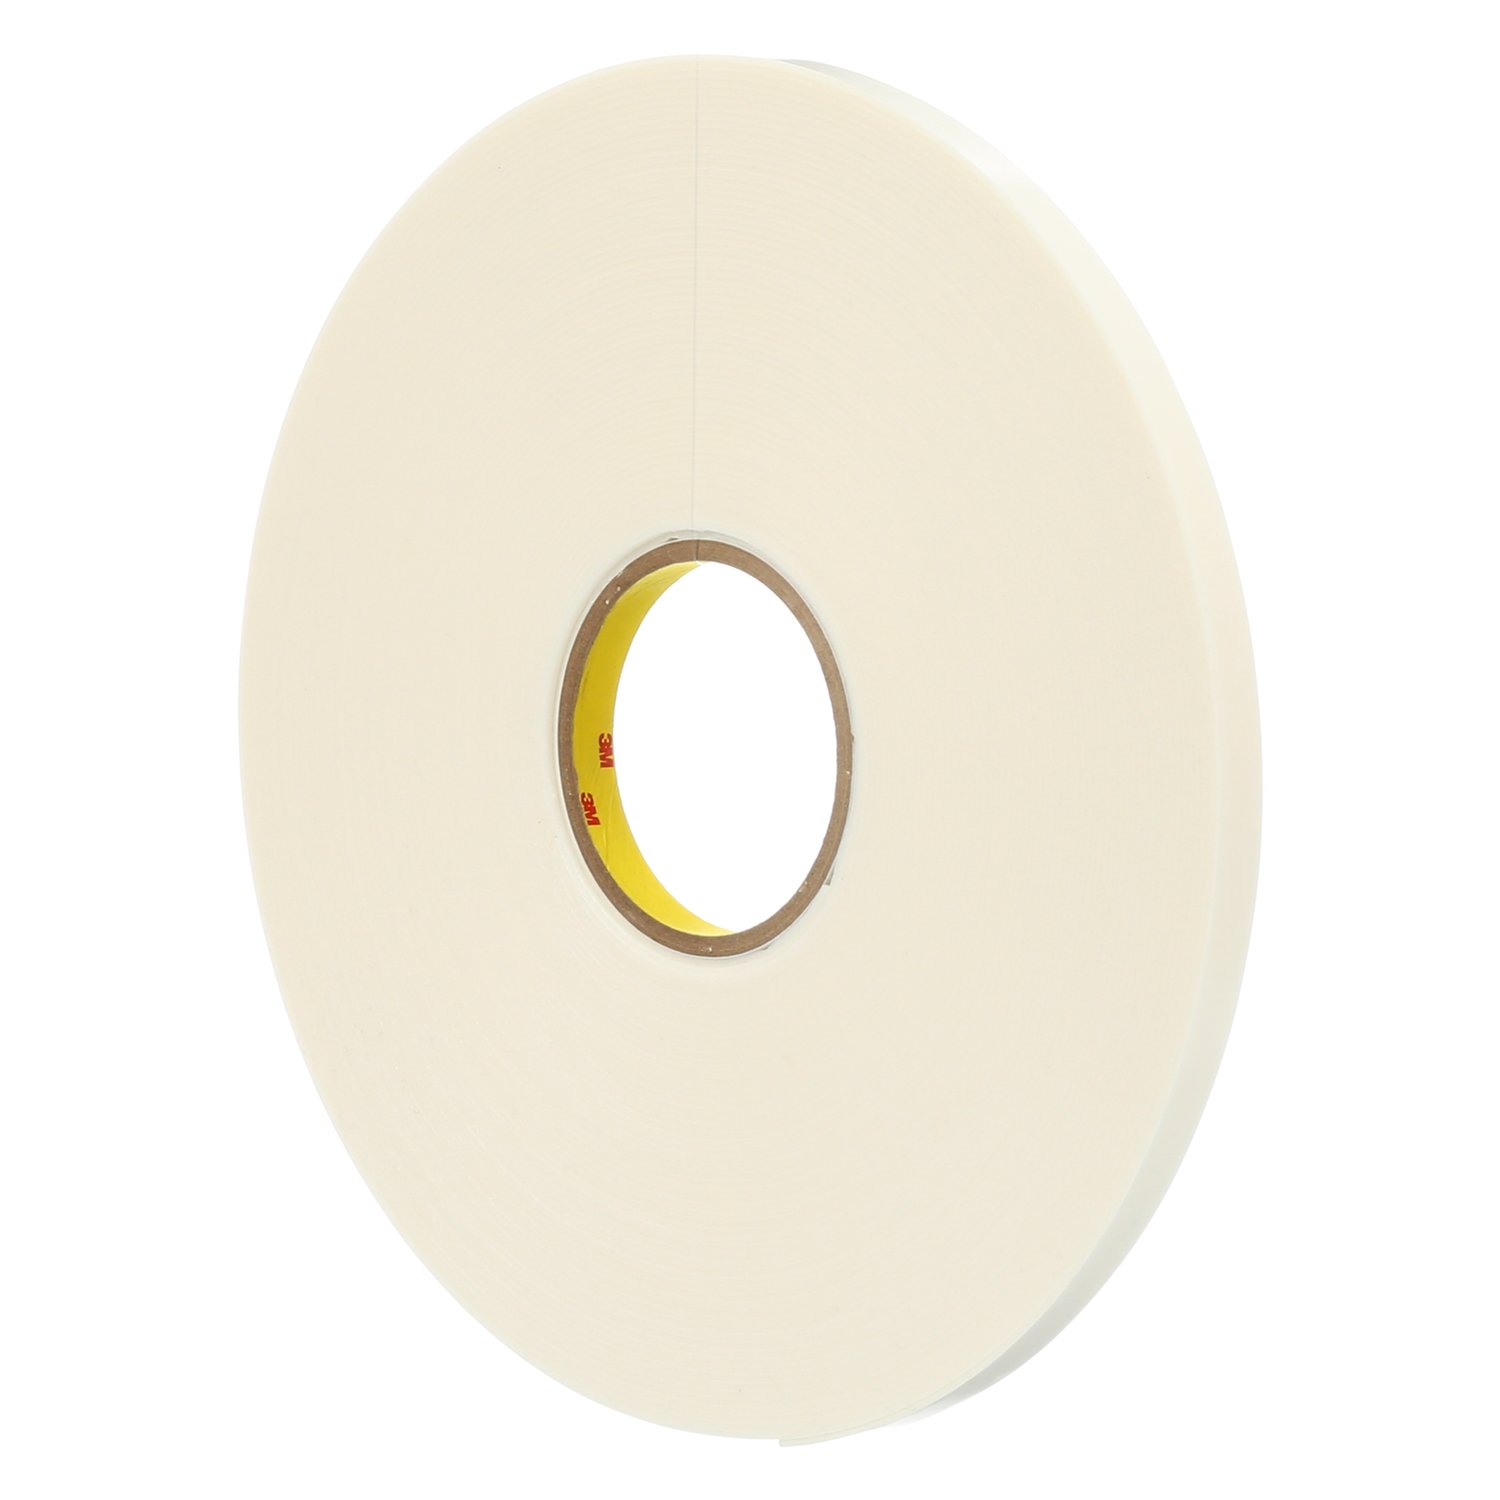 7010292655 - 3M Double Coated Polyethylene Foam Tape 4466, White, 1/4 in x 36 yd, 62
mil, 36 rolls per case